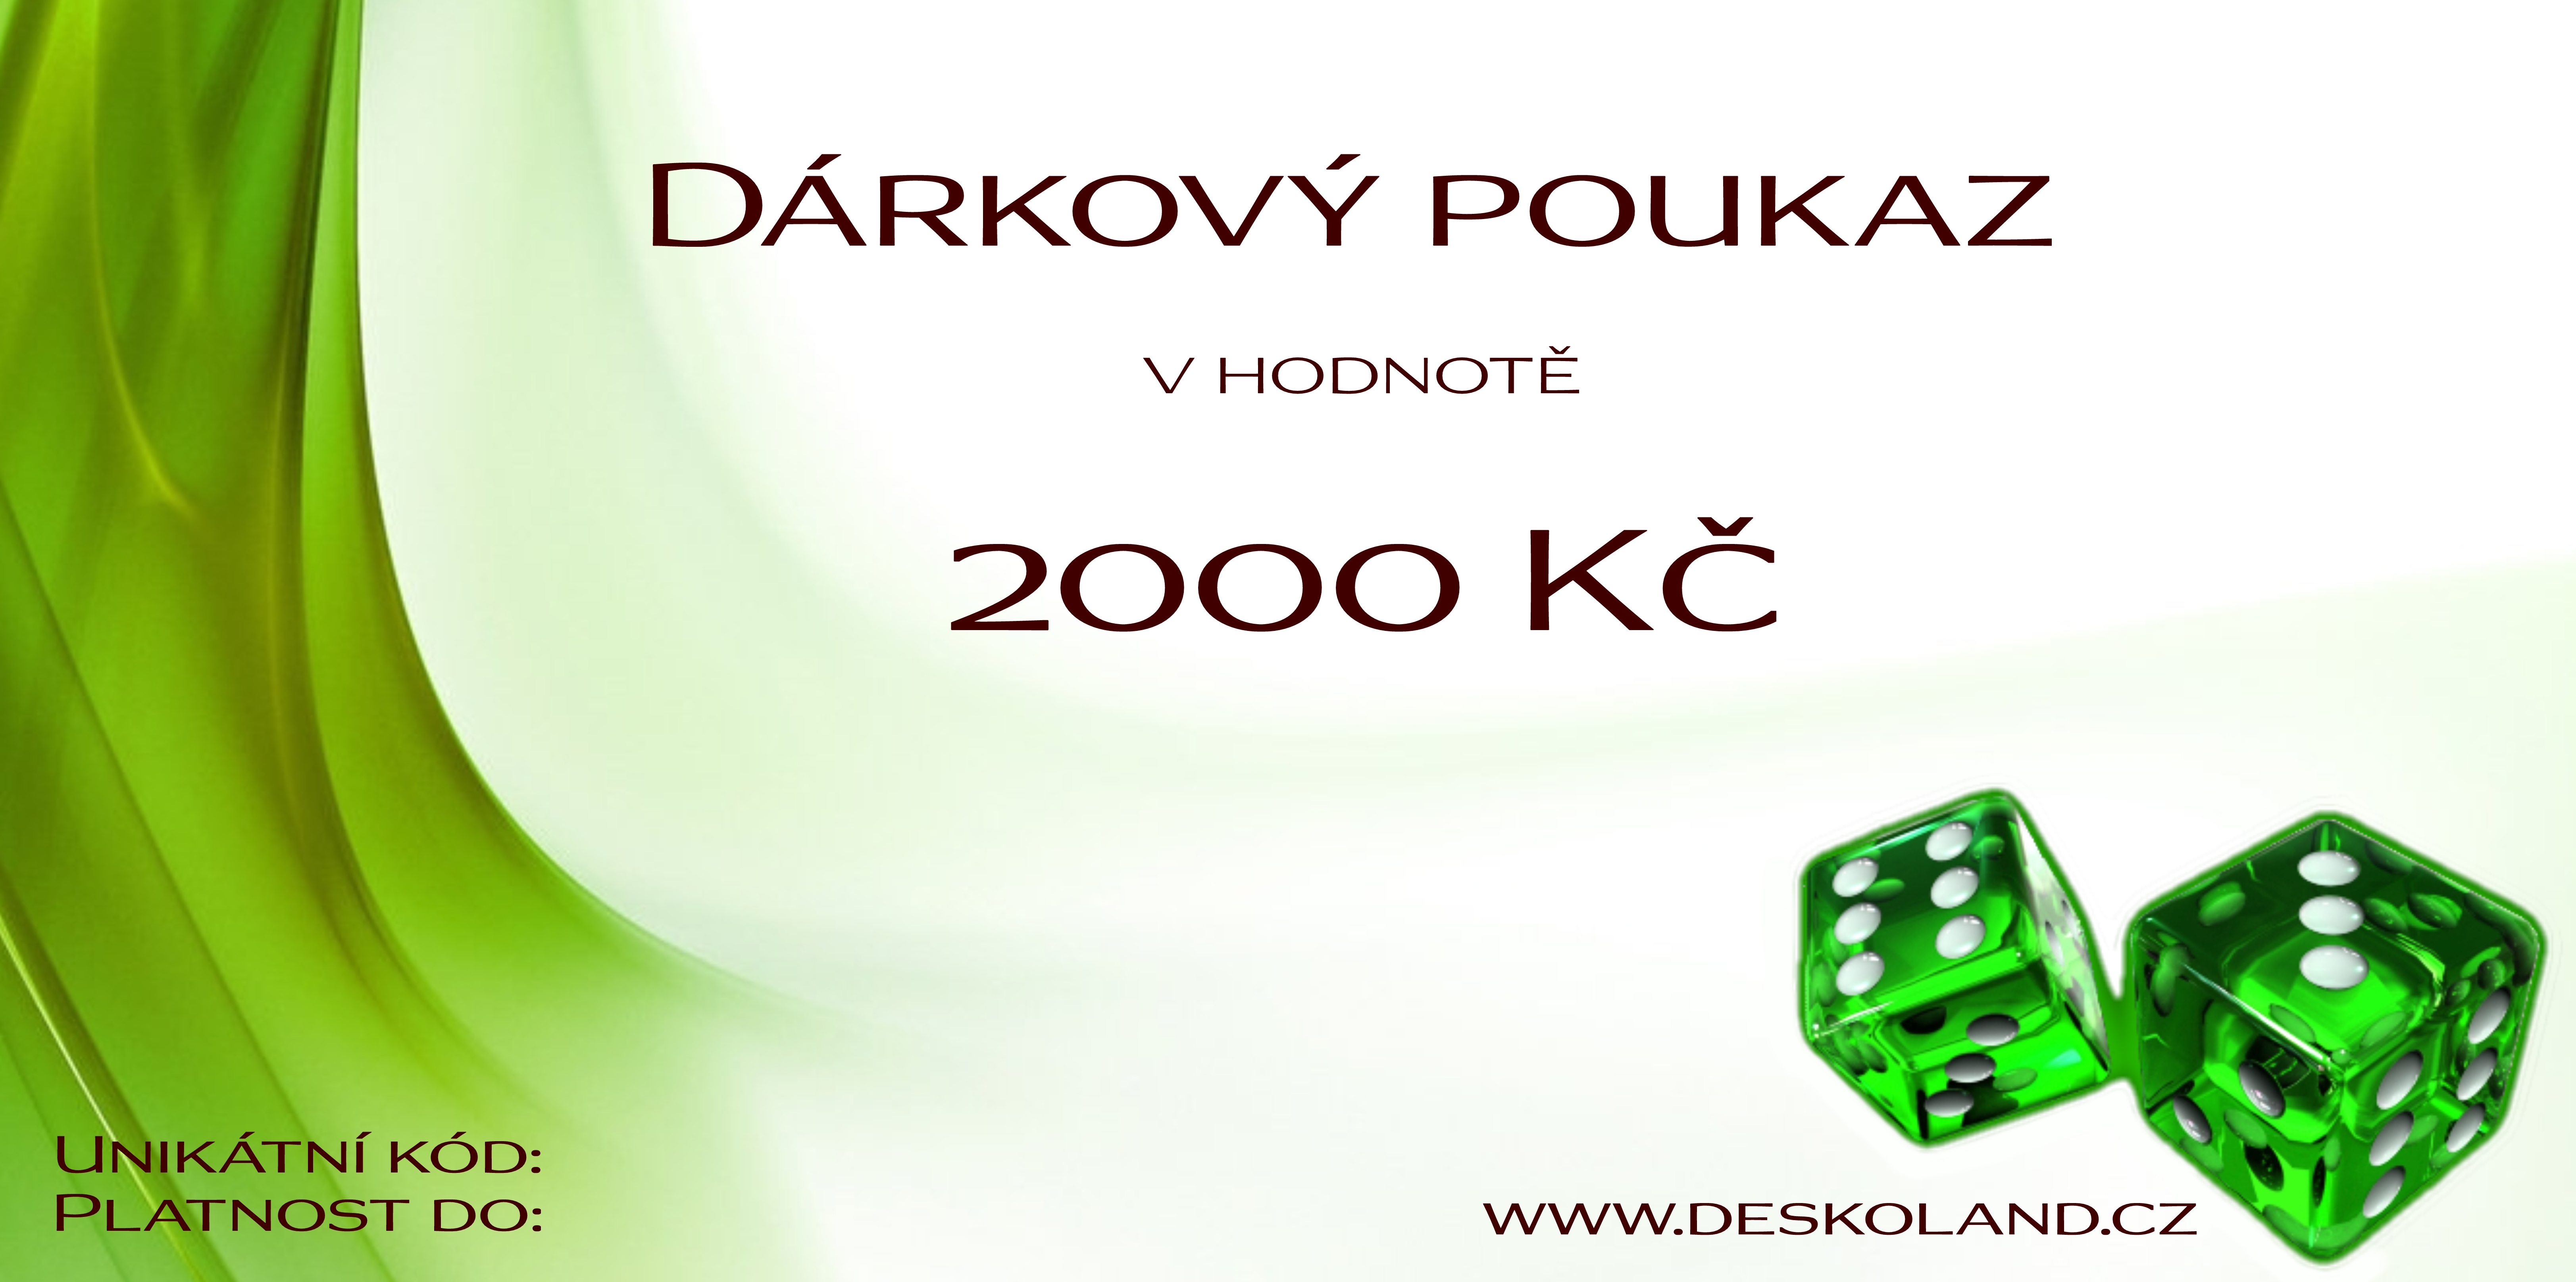 Dárkový poukaz 2000 Kč na Deskoland.cz